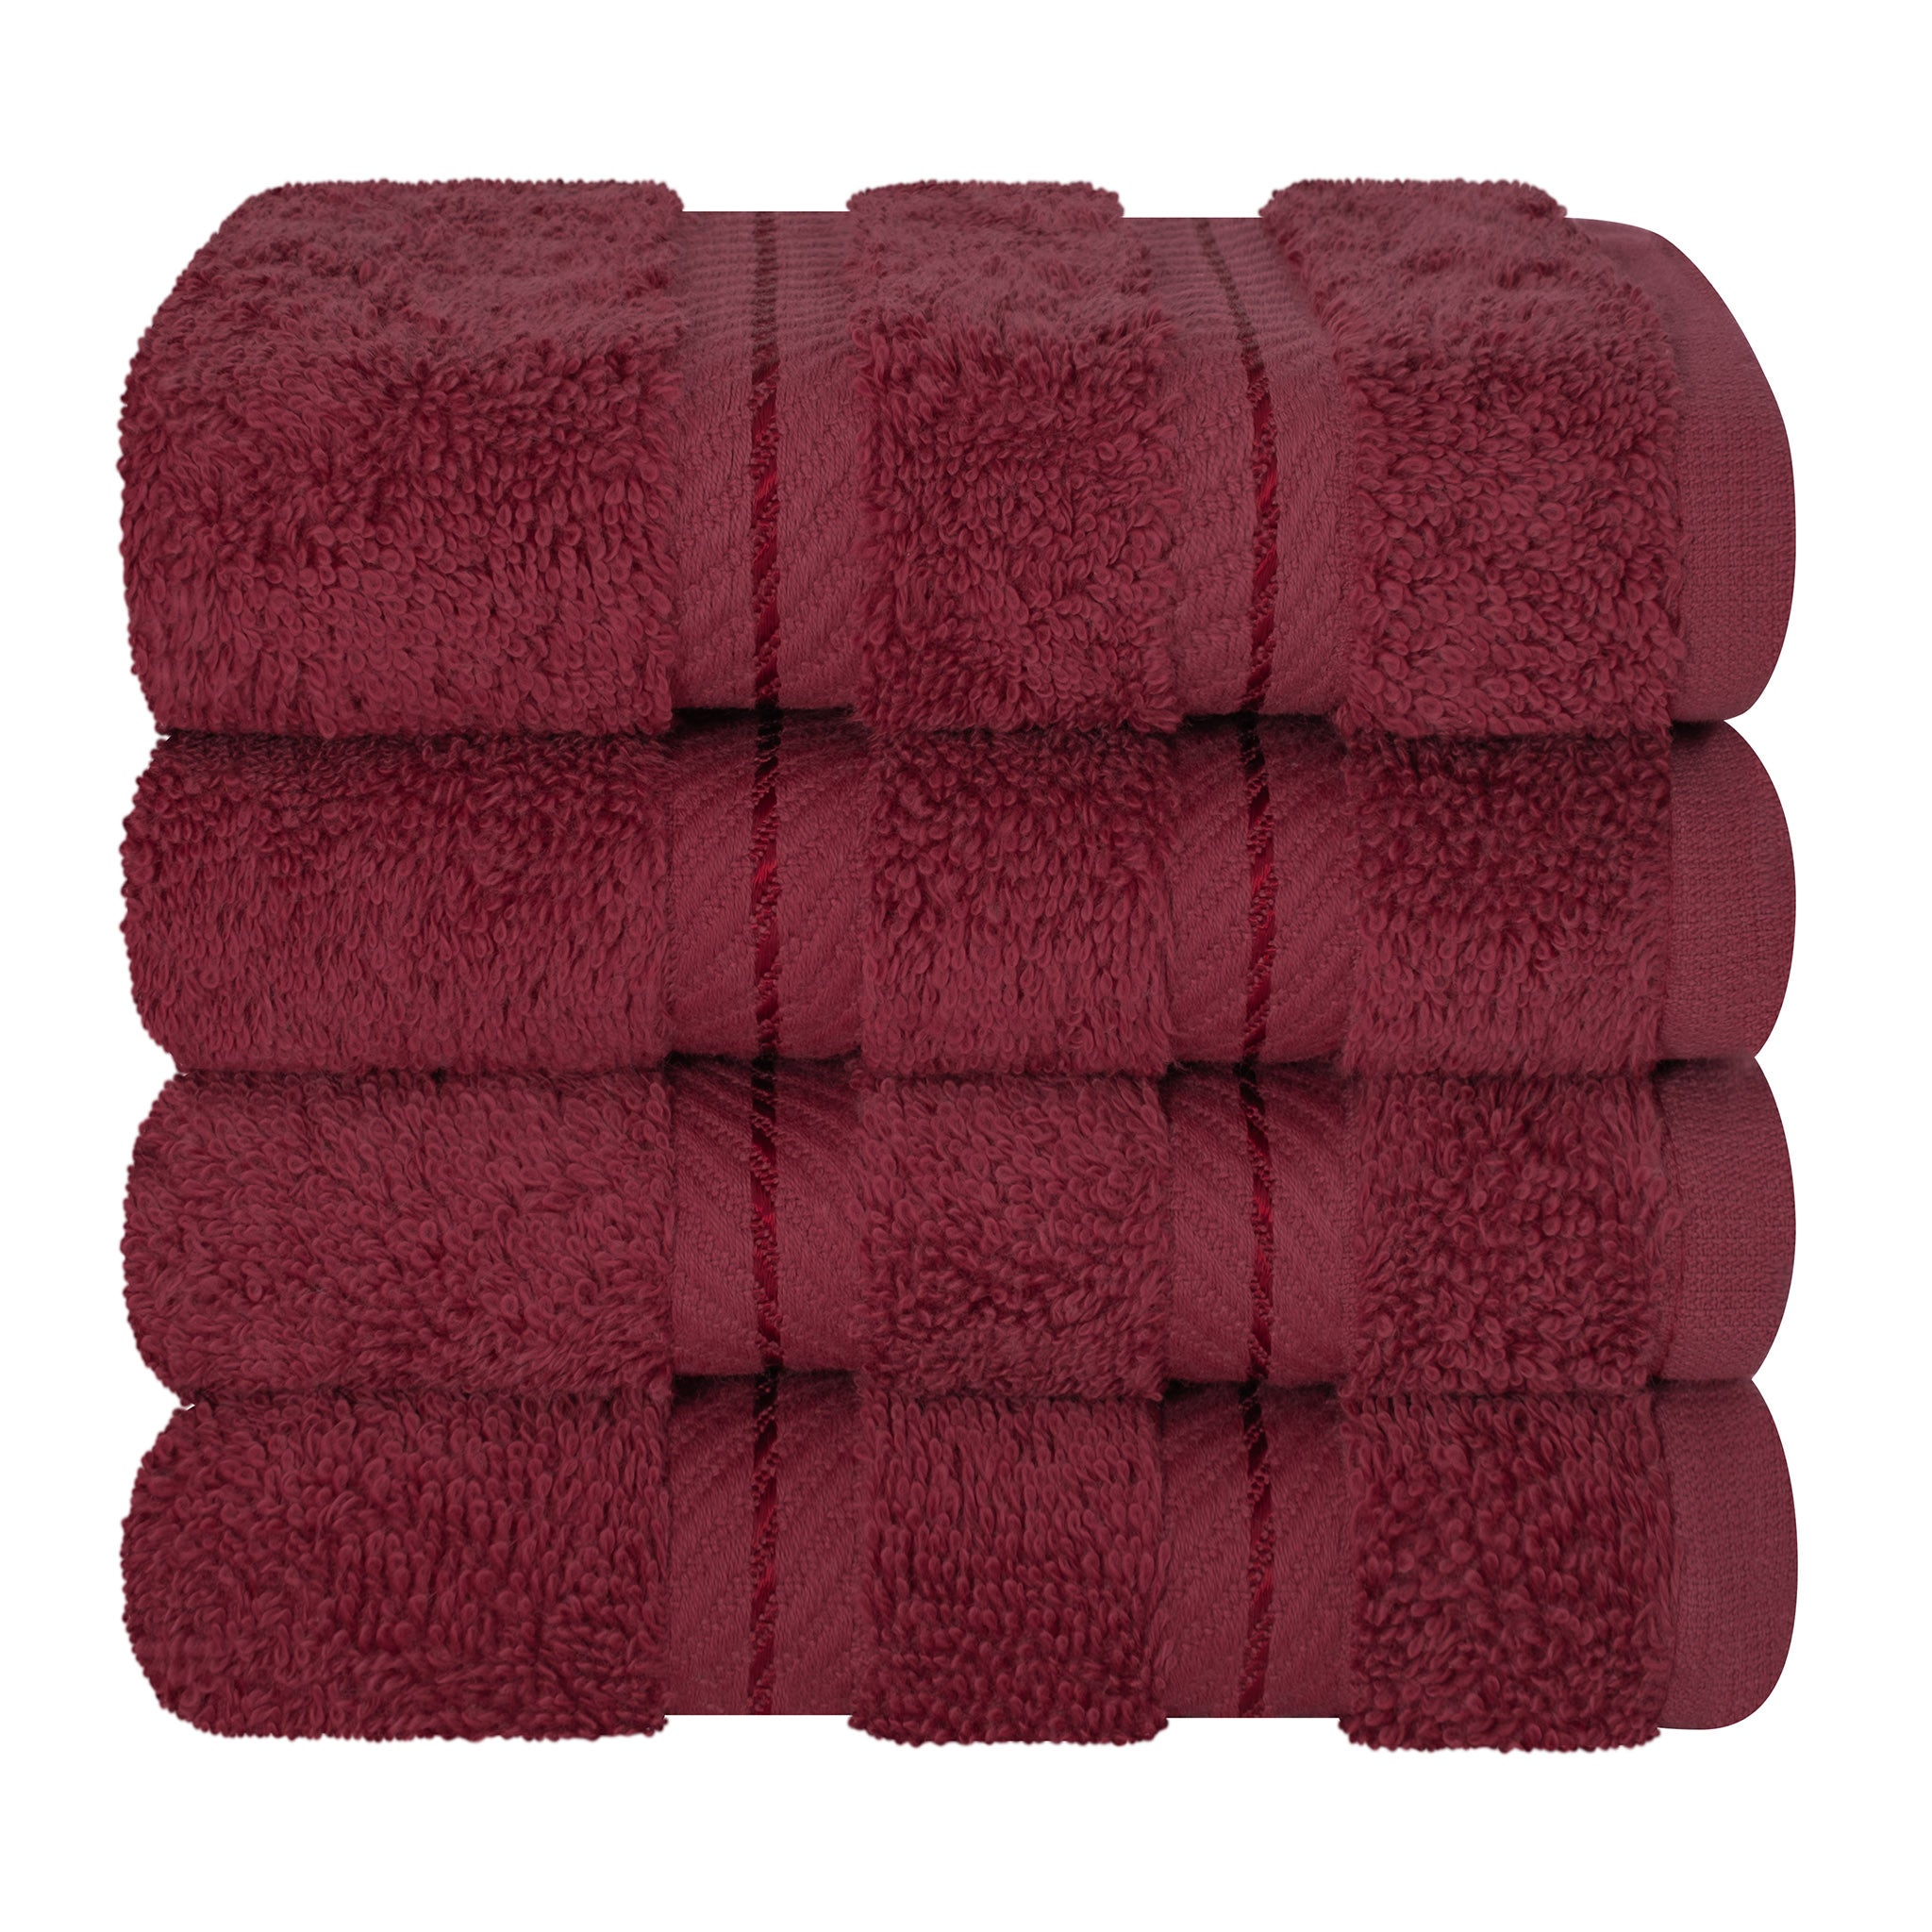  American Soft Linen 100% Turkish Cotton 4 Piece Washcloth Set - Wholesale - bordeaux-red-7